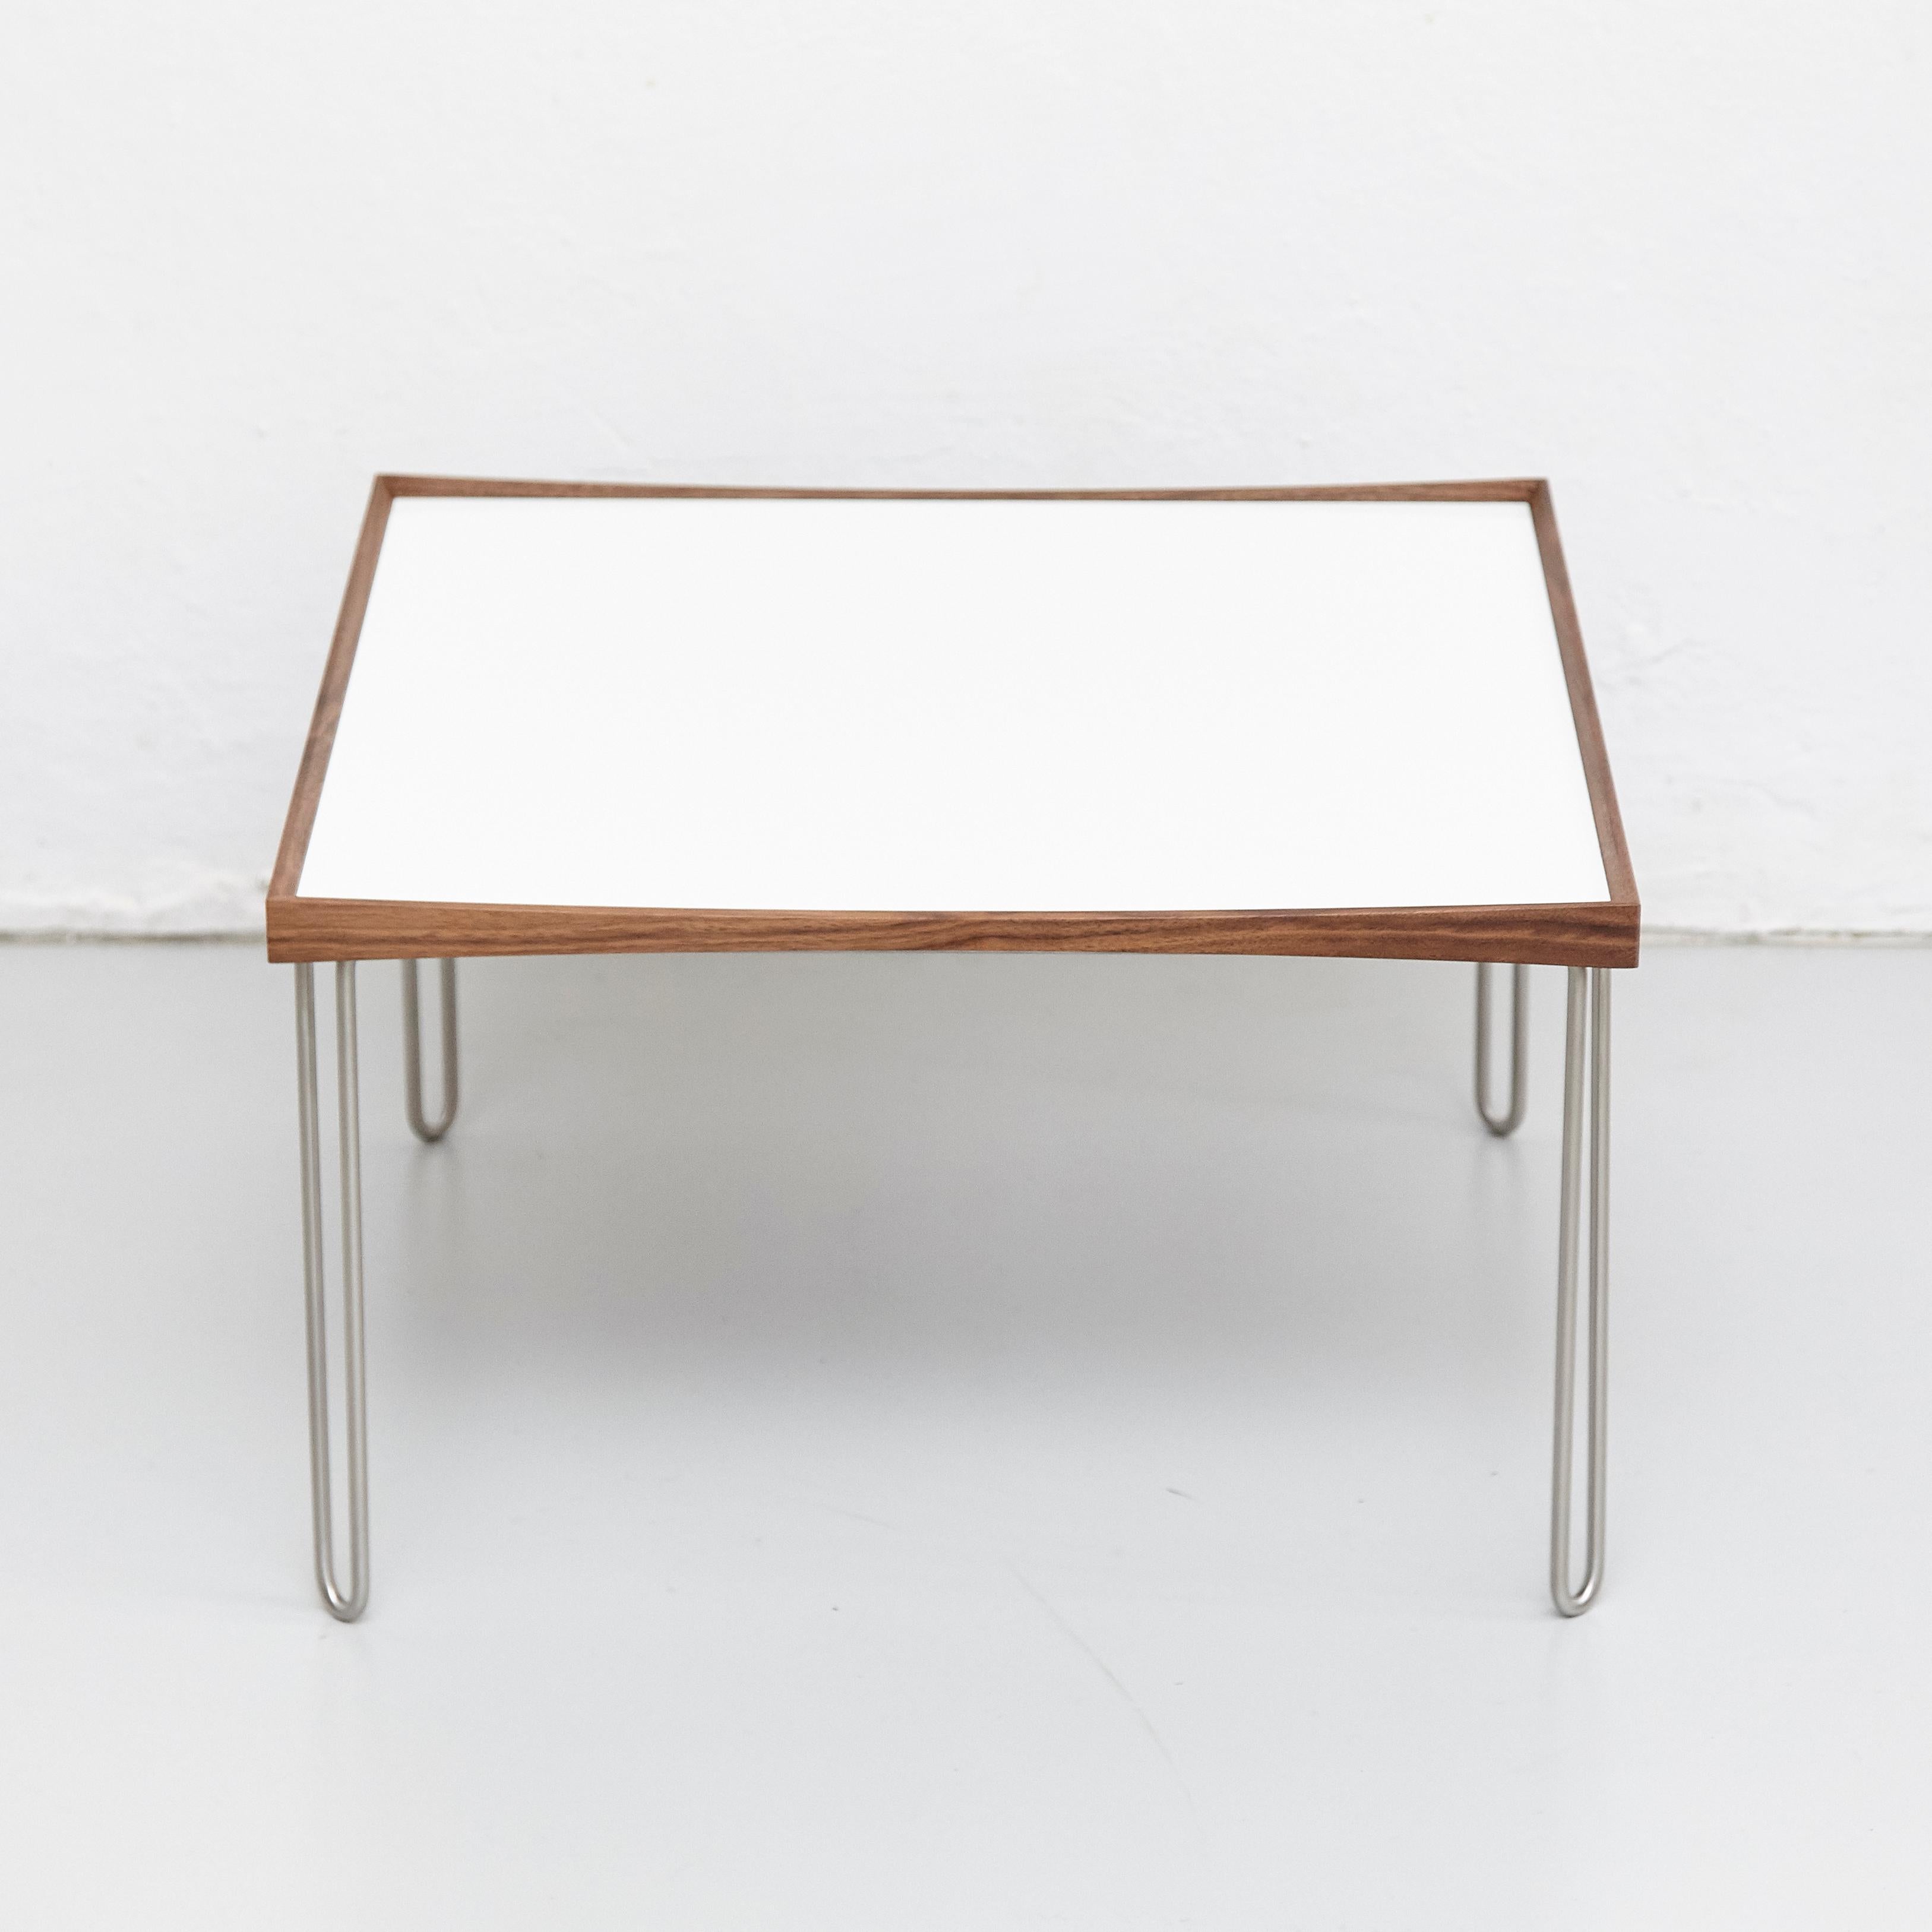 Der Tisch wurde 1965 von Finn Juhl entworfen und 2002 neu aufgelegt.
Hergestellt von House of Finn Juhl in Dänemark.

Der Tray-Tisch wurde 1965 von Finn Juhl entworfen und ist eine Weiterentwicklung seiner berühmten Turning Trays, die heute von